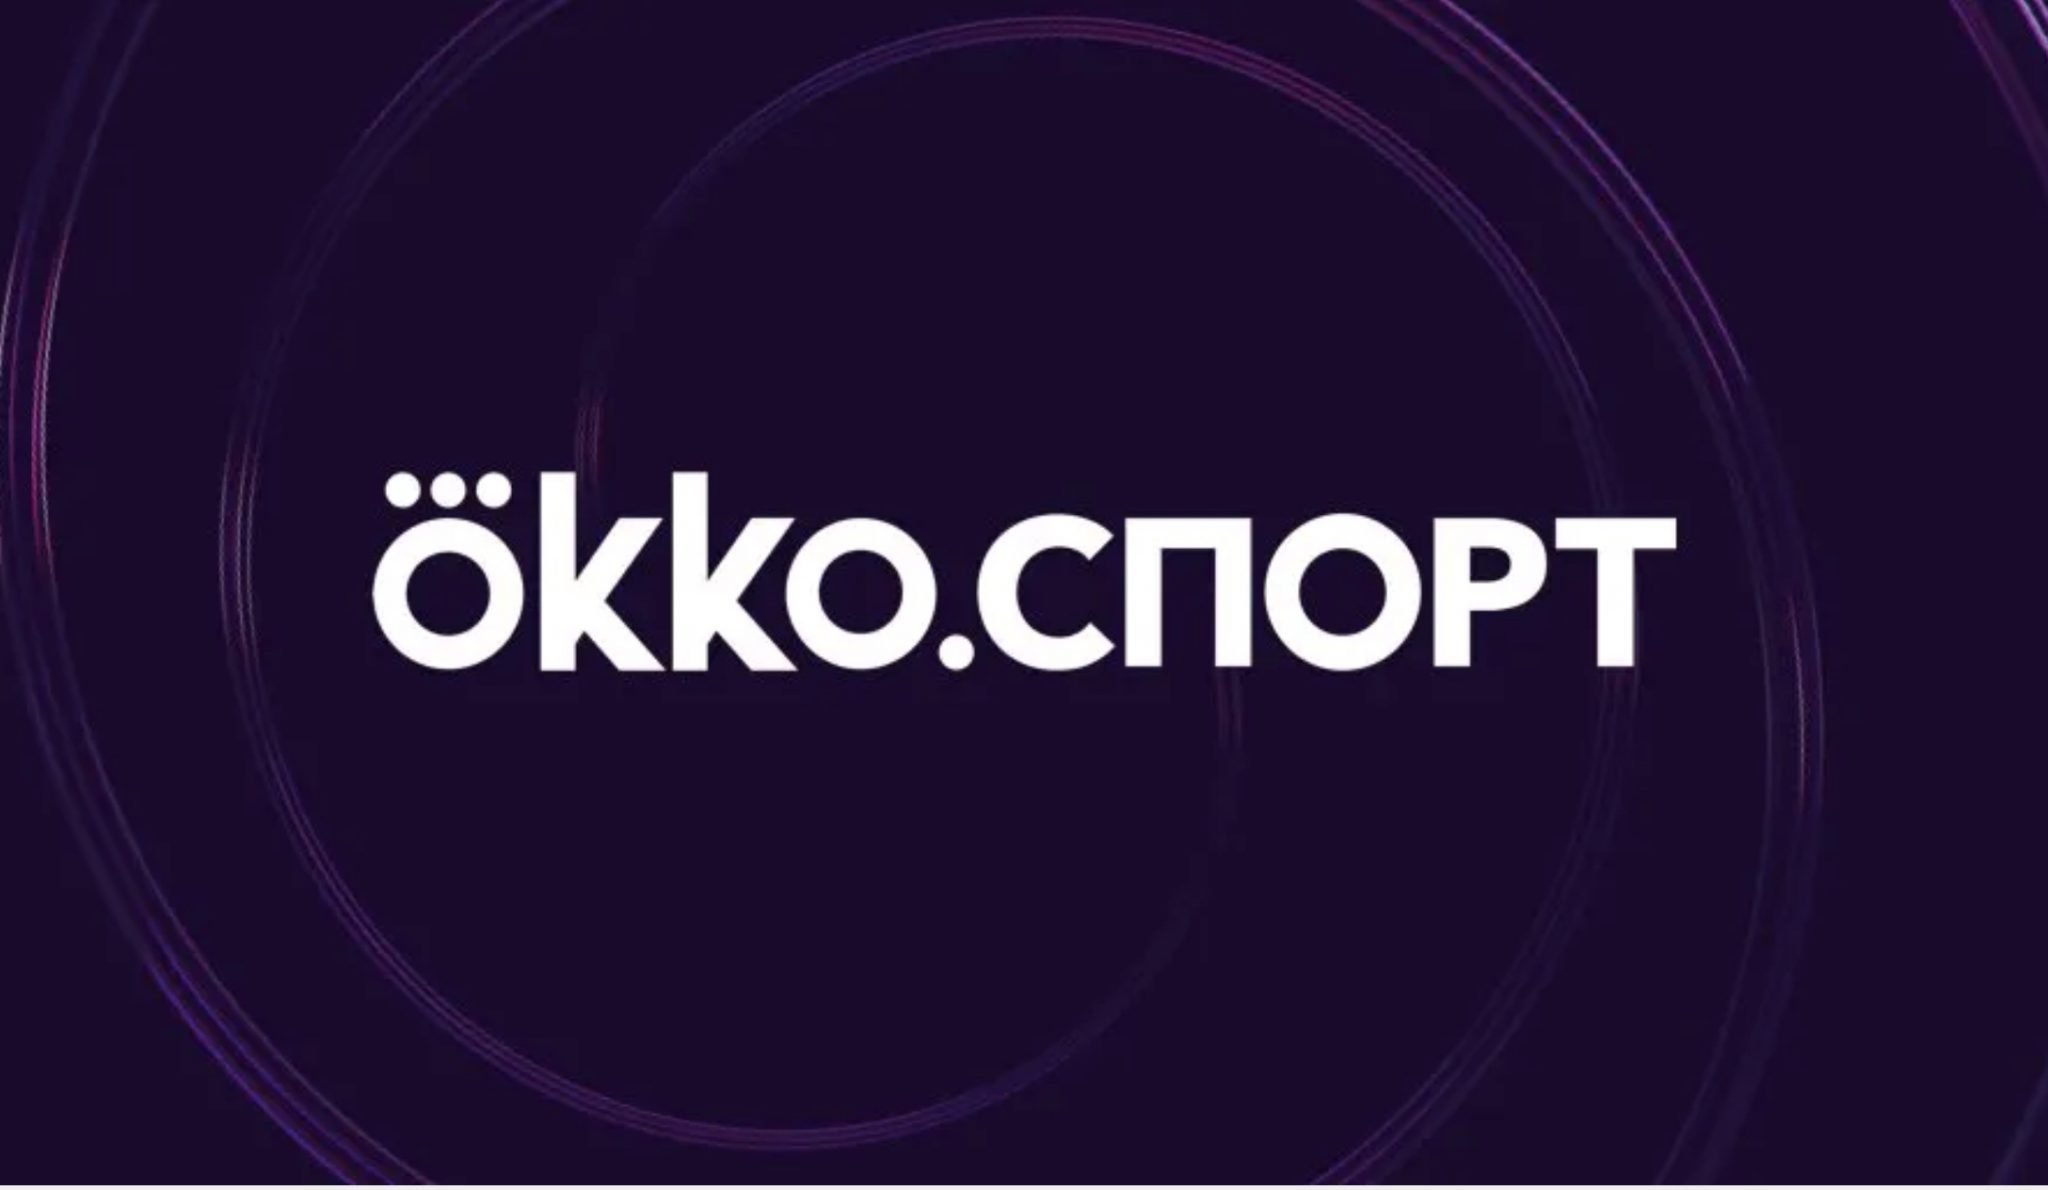 Okko в новом сезоне эксклюзивно покажет в России матчи всех клубных еврокубков